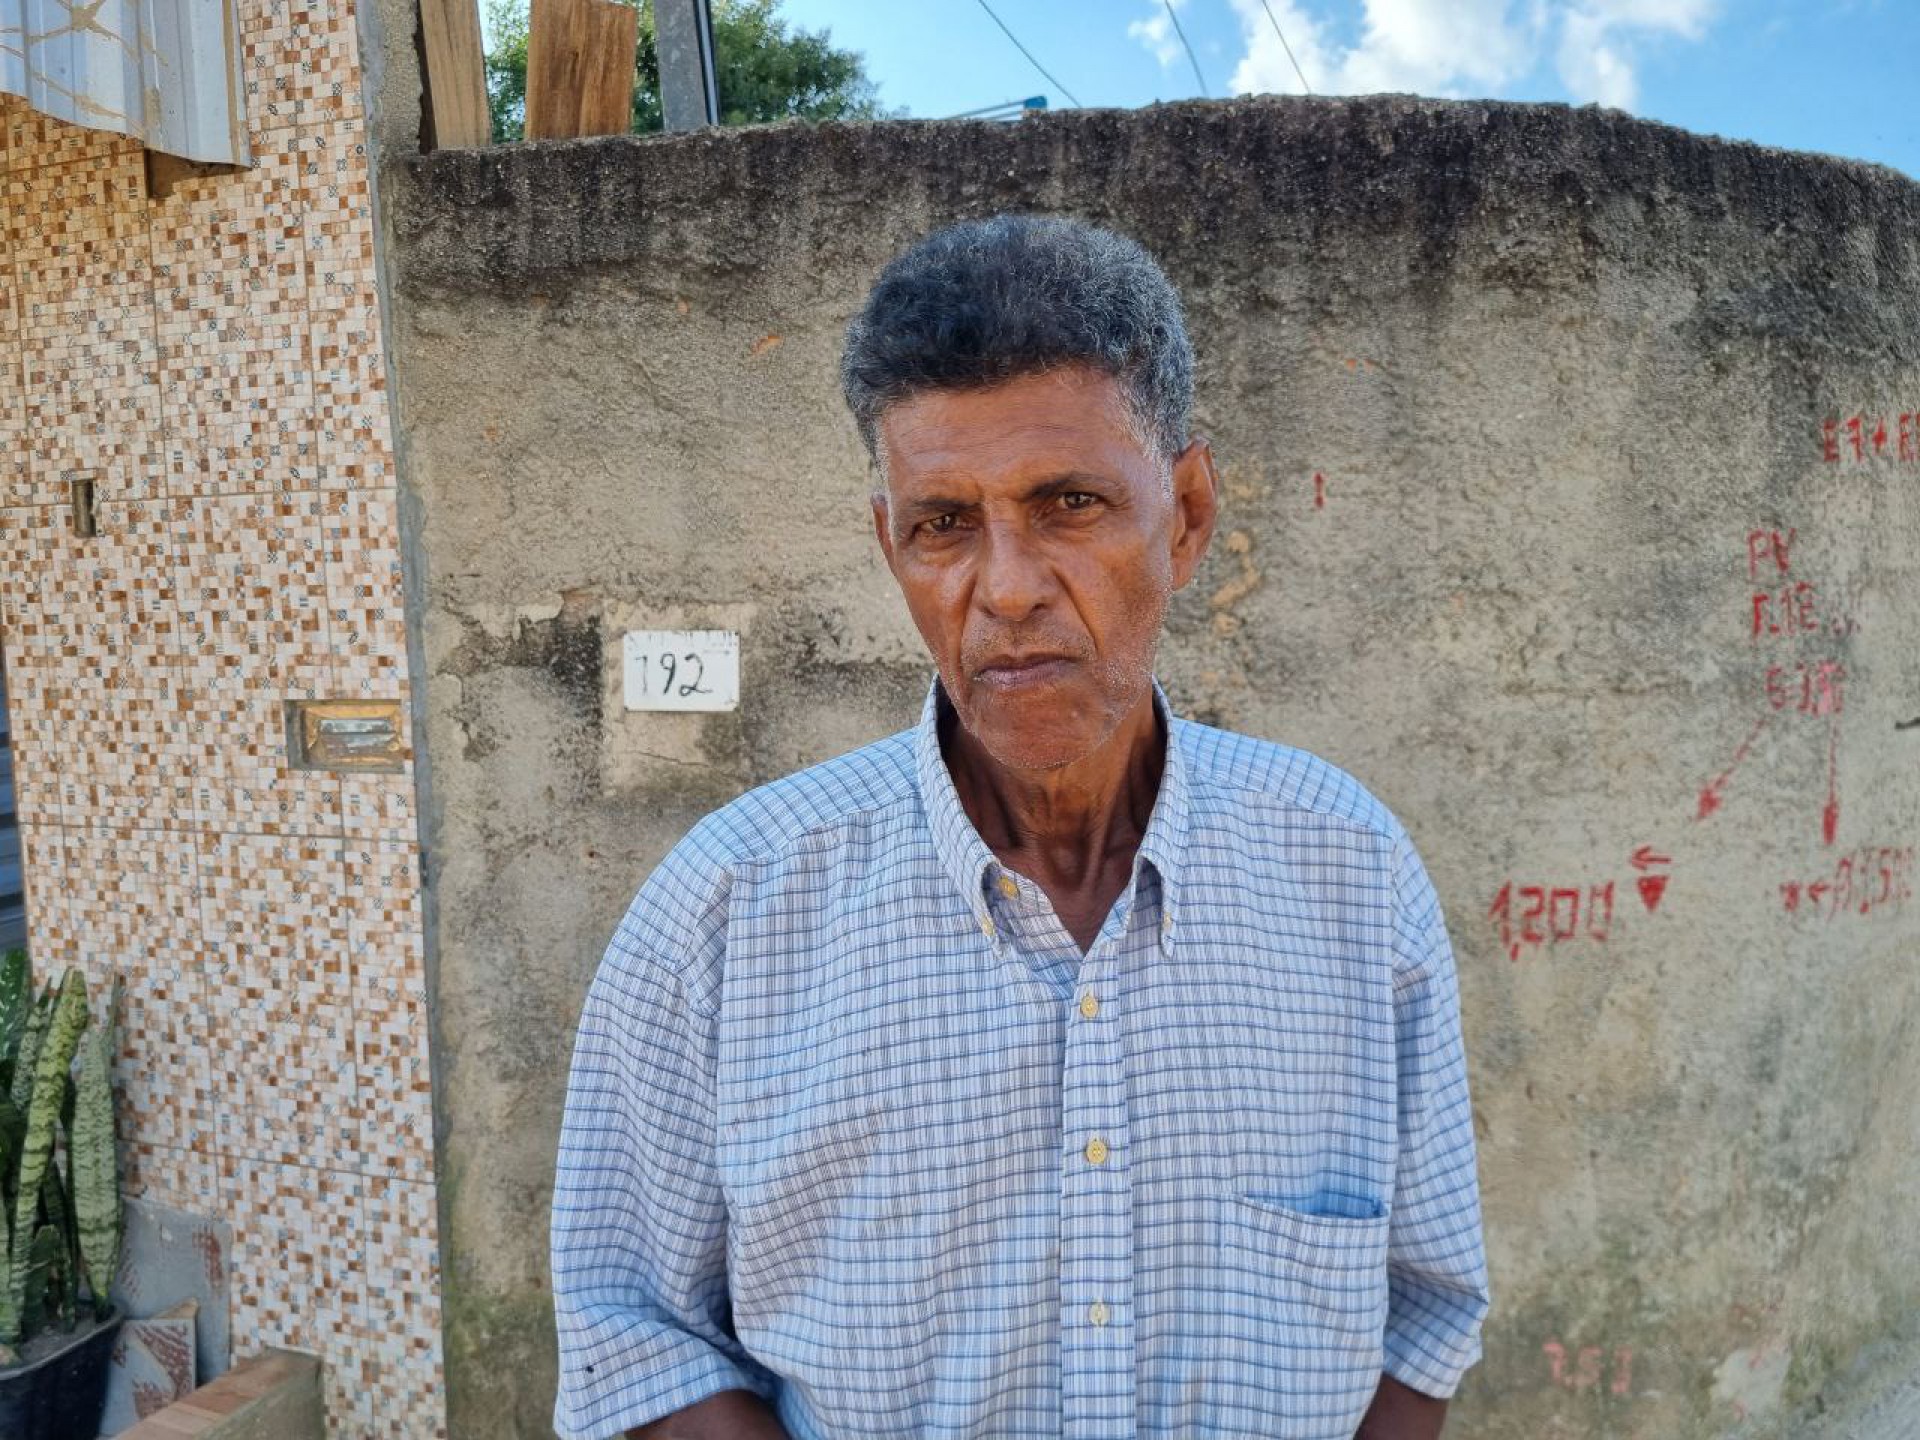 João Oliveira vive há 11 anos no bairro Jardim do Ipê - Divulgação